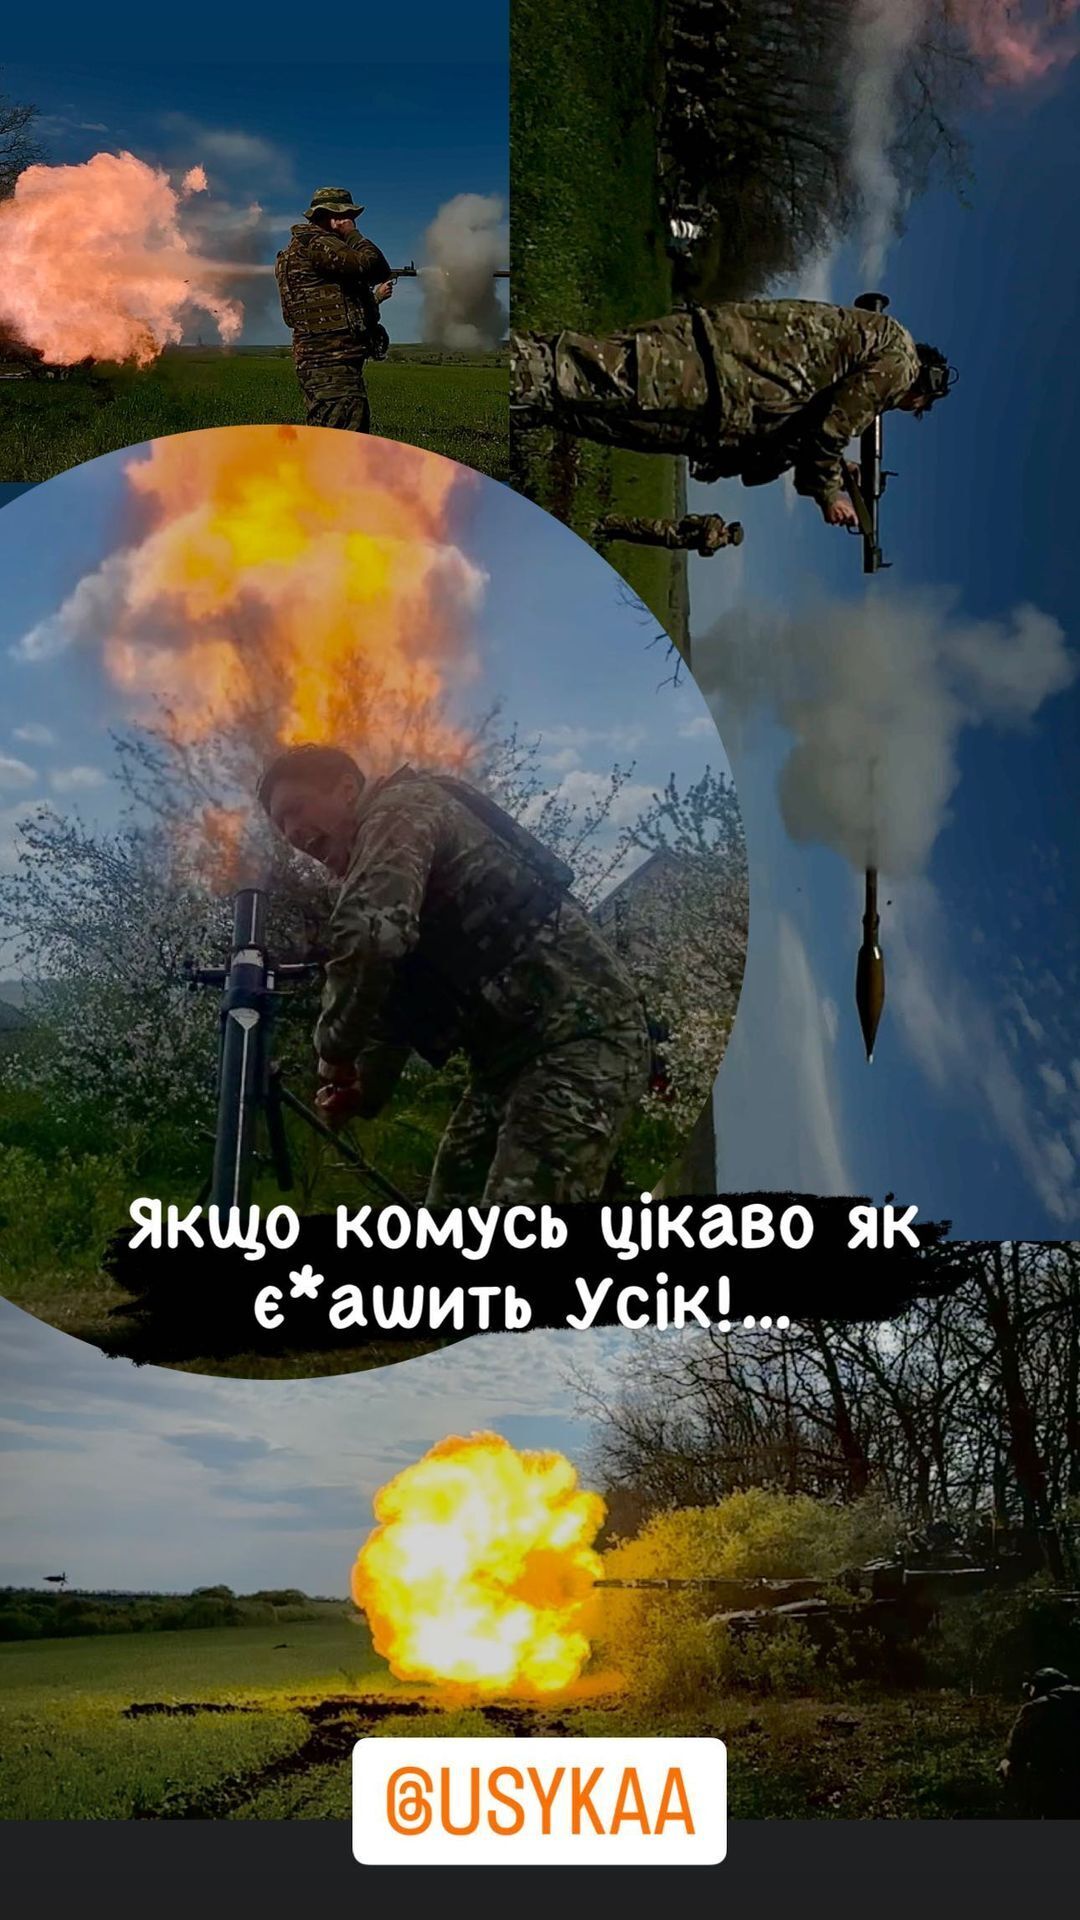 Один из украинских воинов у себя в Instagram выложил коллаж, на котором запечатлен Усик, стреляющий по врагу.